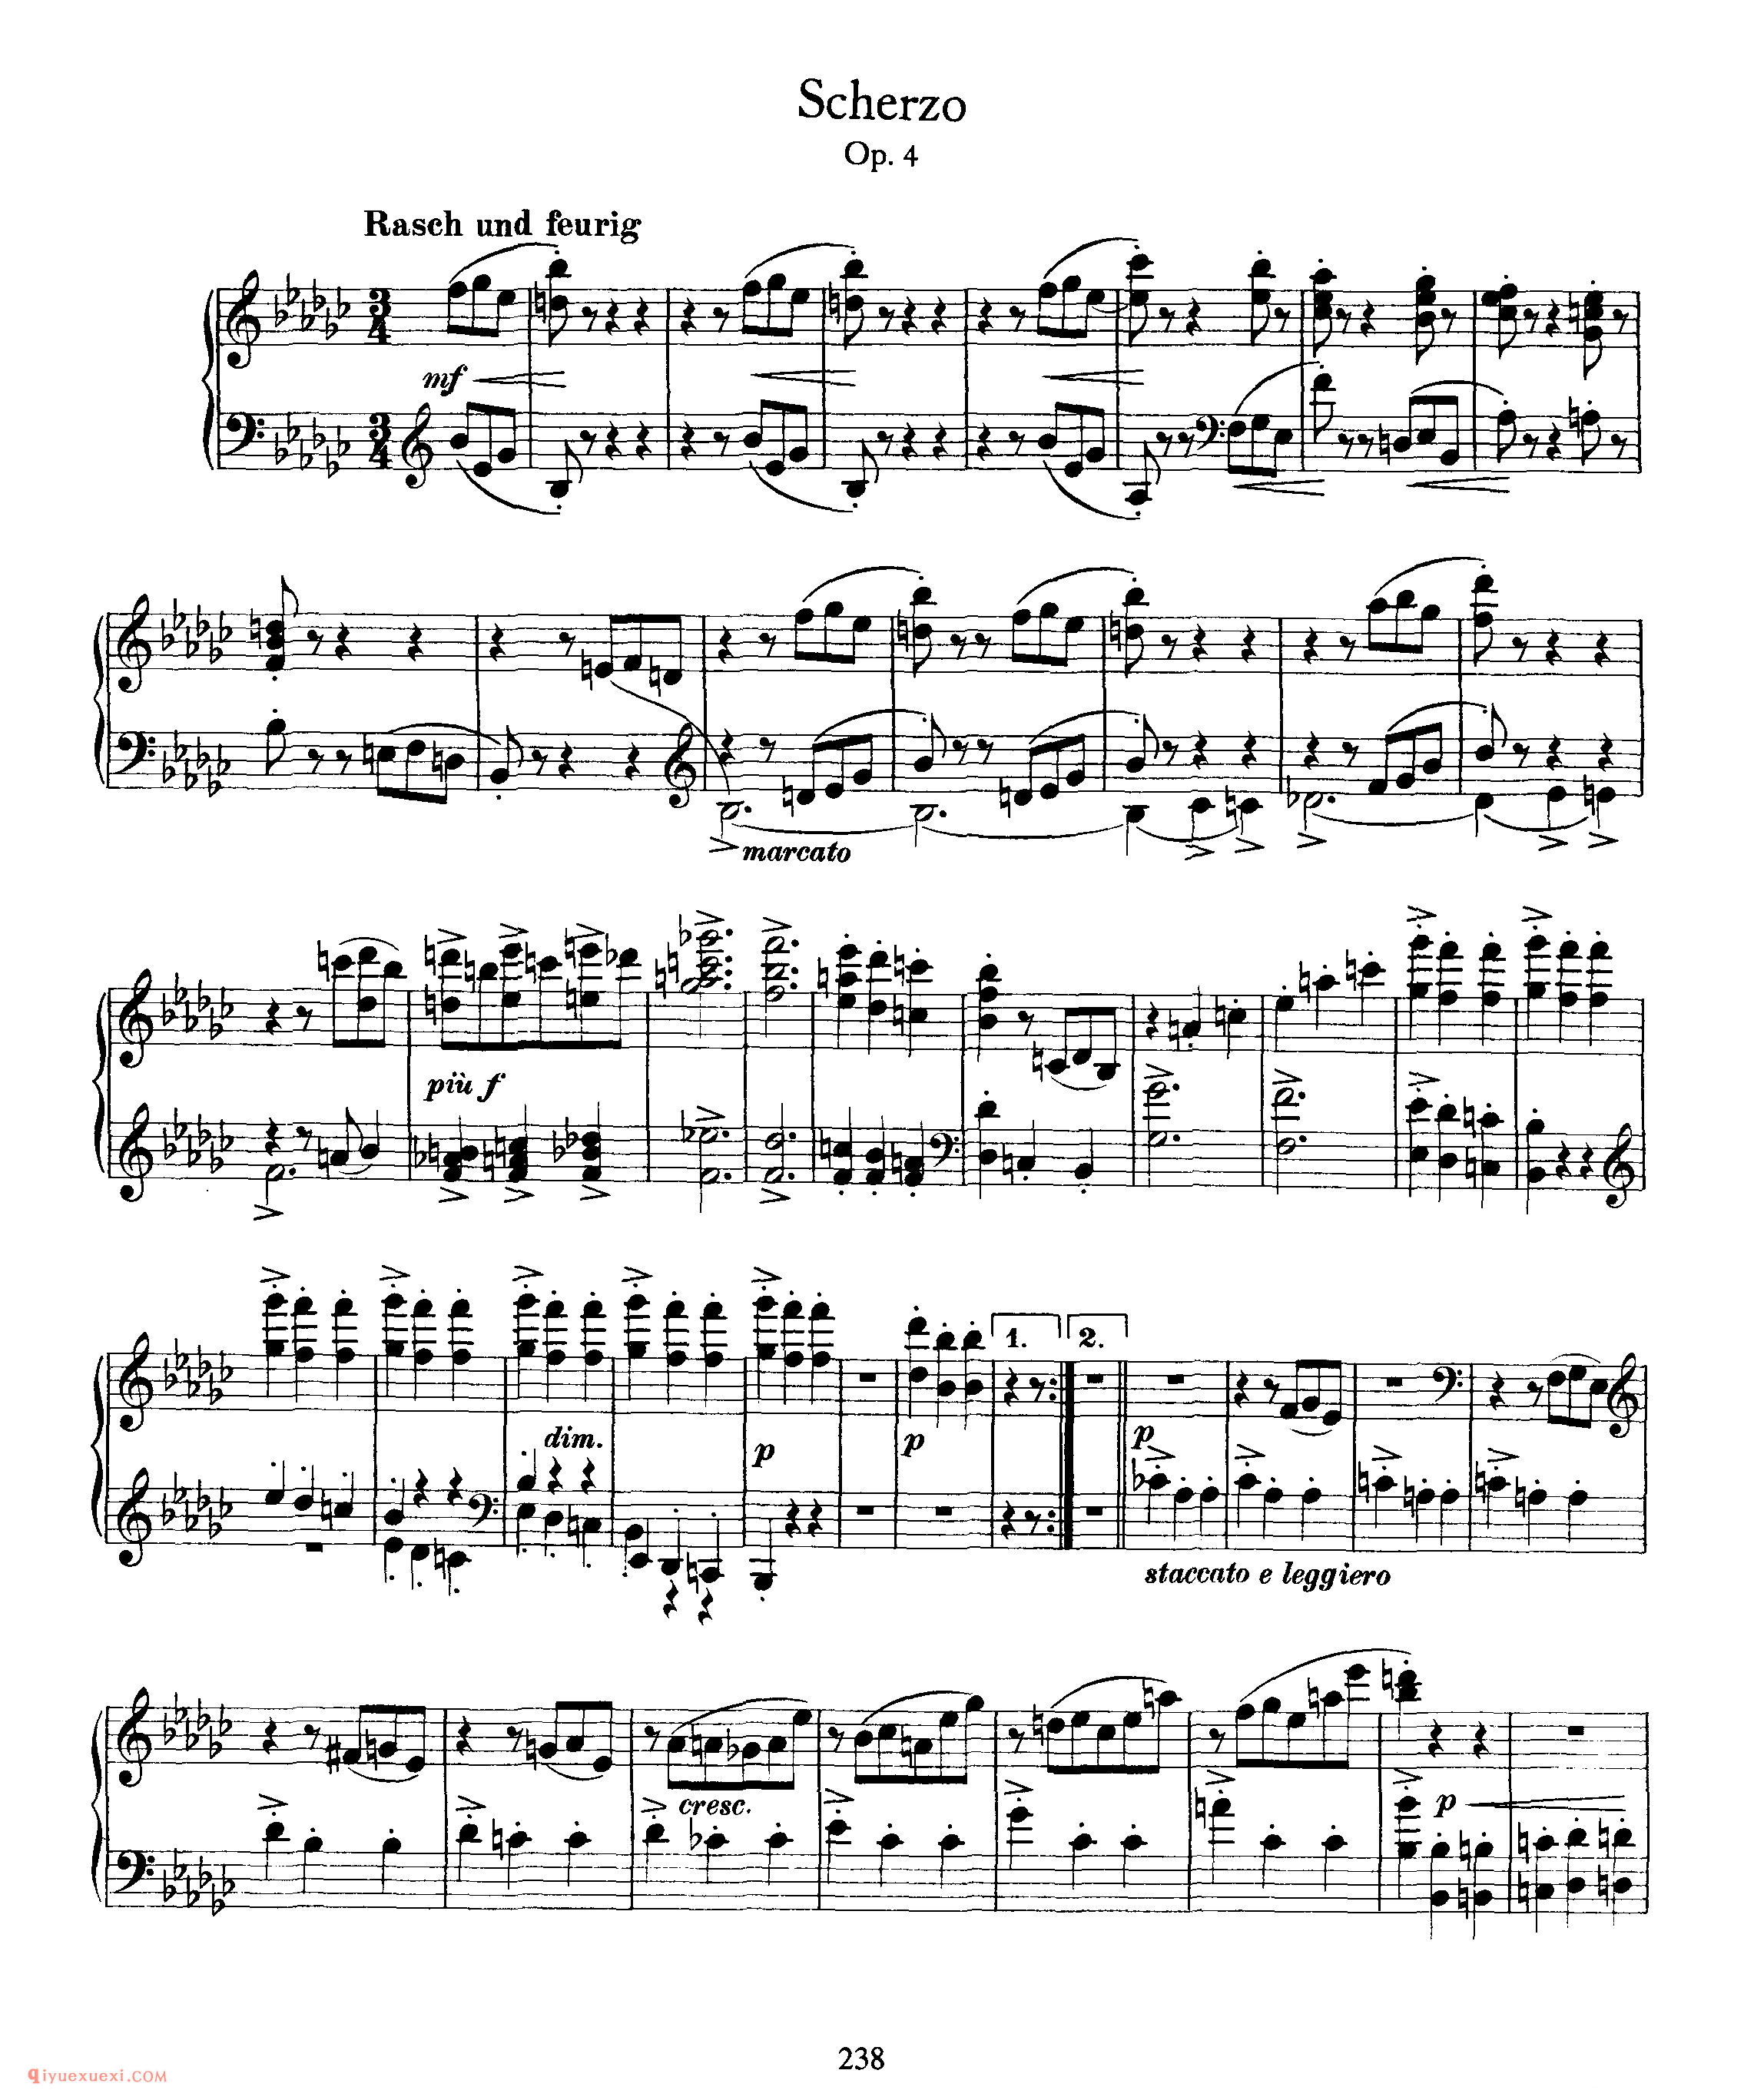 勃拉姆斯《谐谑曲》作品4_ Scherzo Op.4_约翰内斯·勃拉姆斯钢琴乐谱